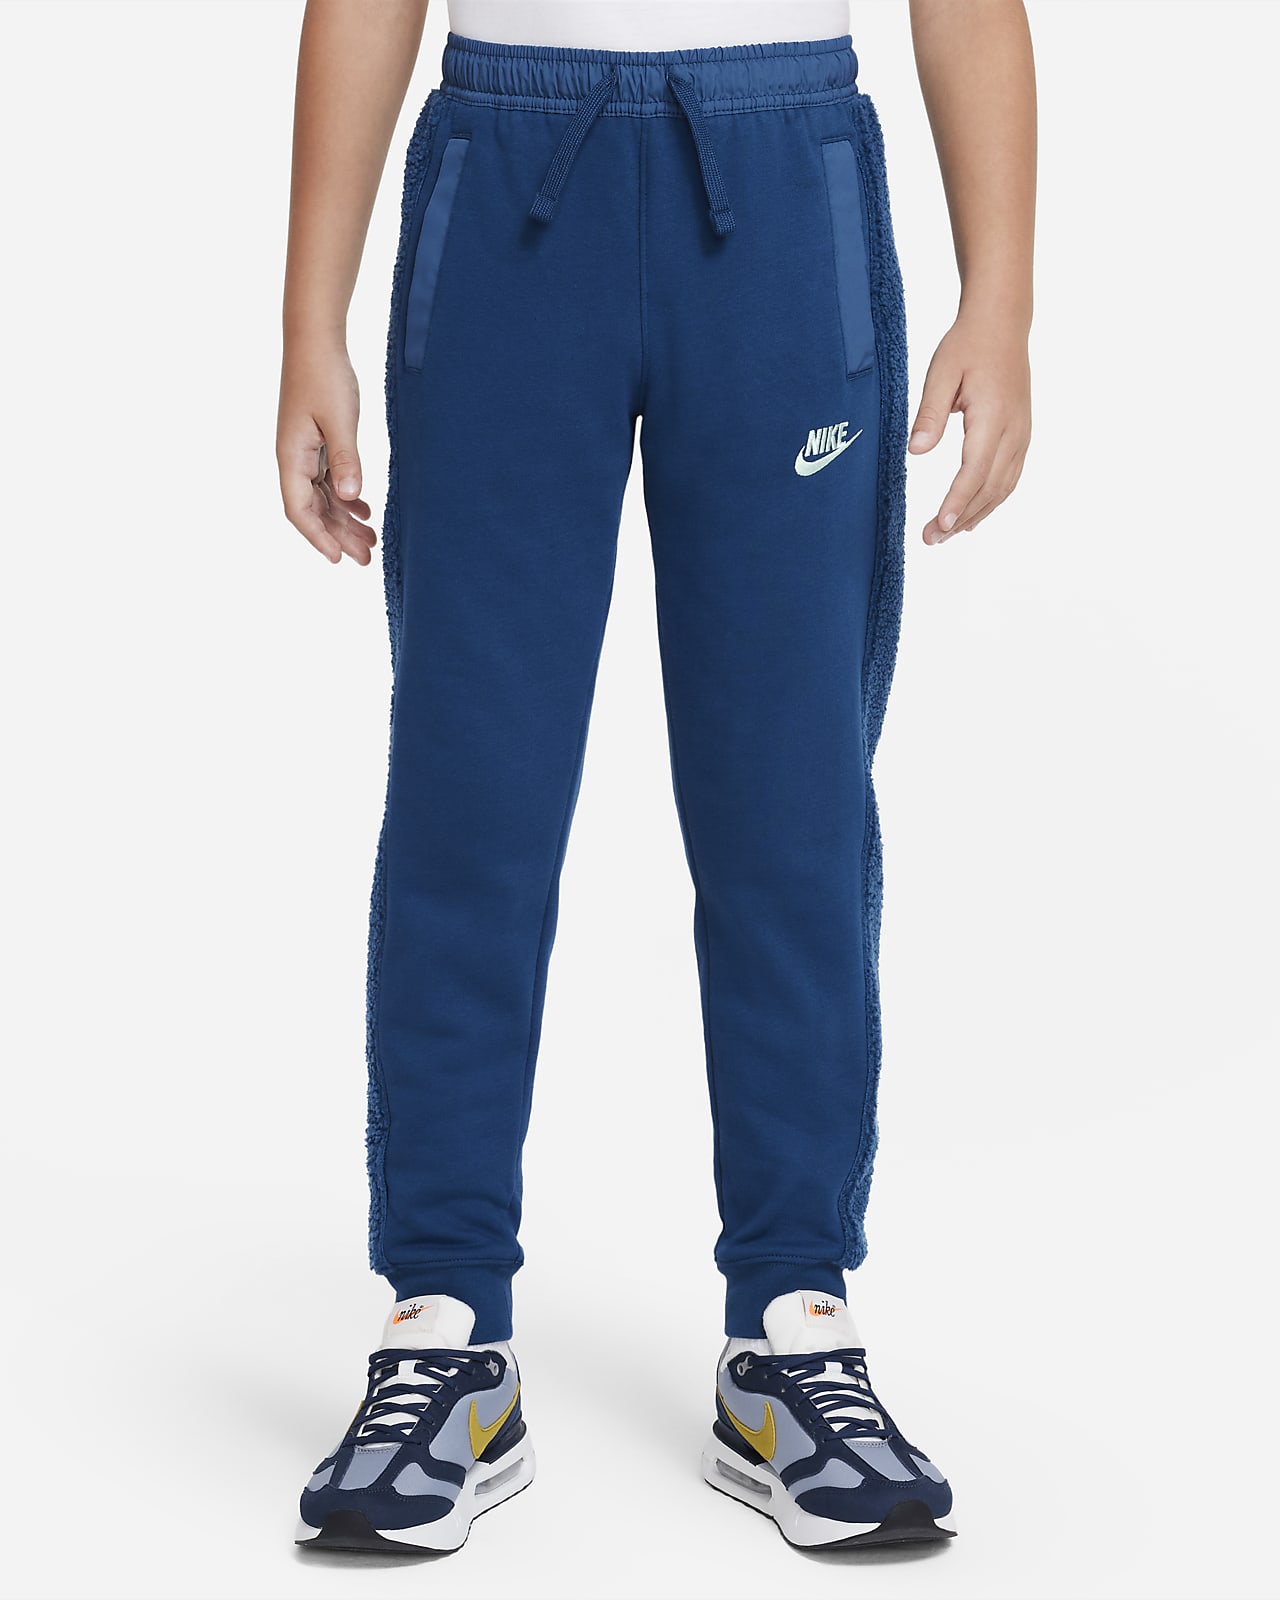 Zateplené kalhoty Nike Sportswear Club Fleece pro větší děti (chlapce)